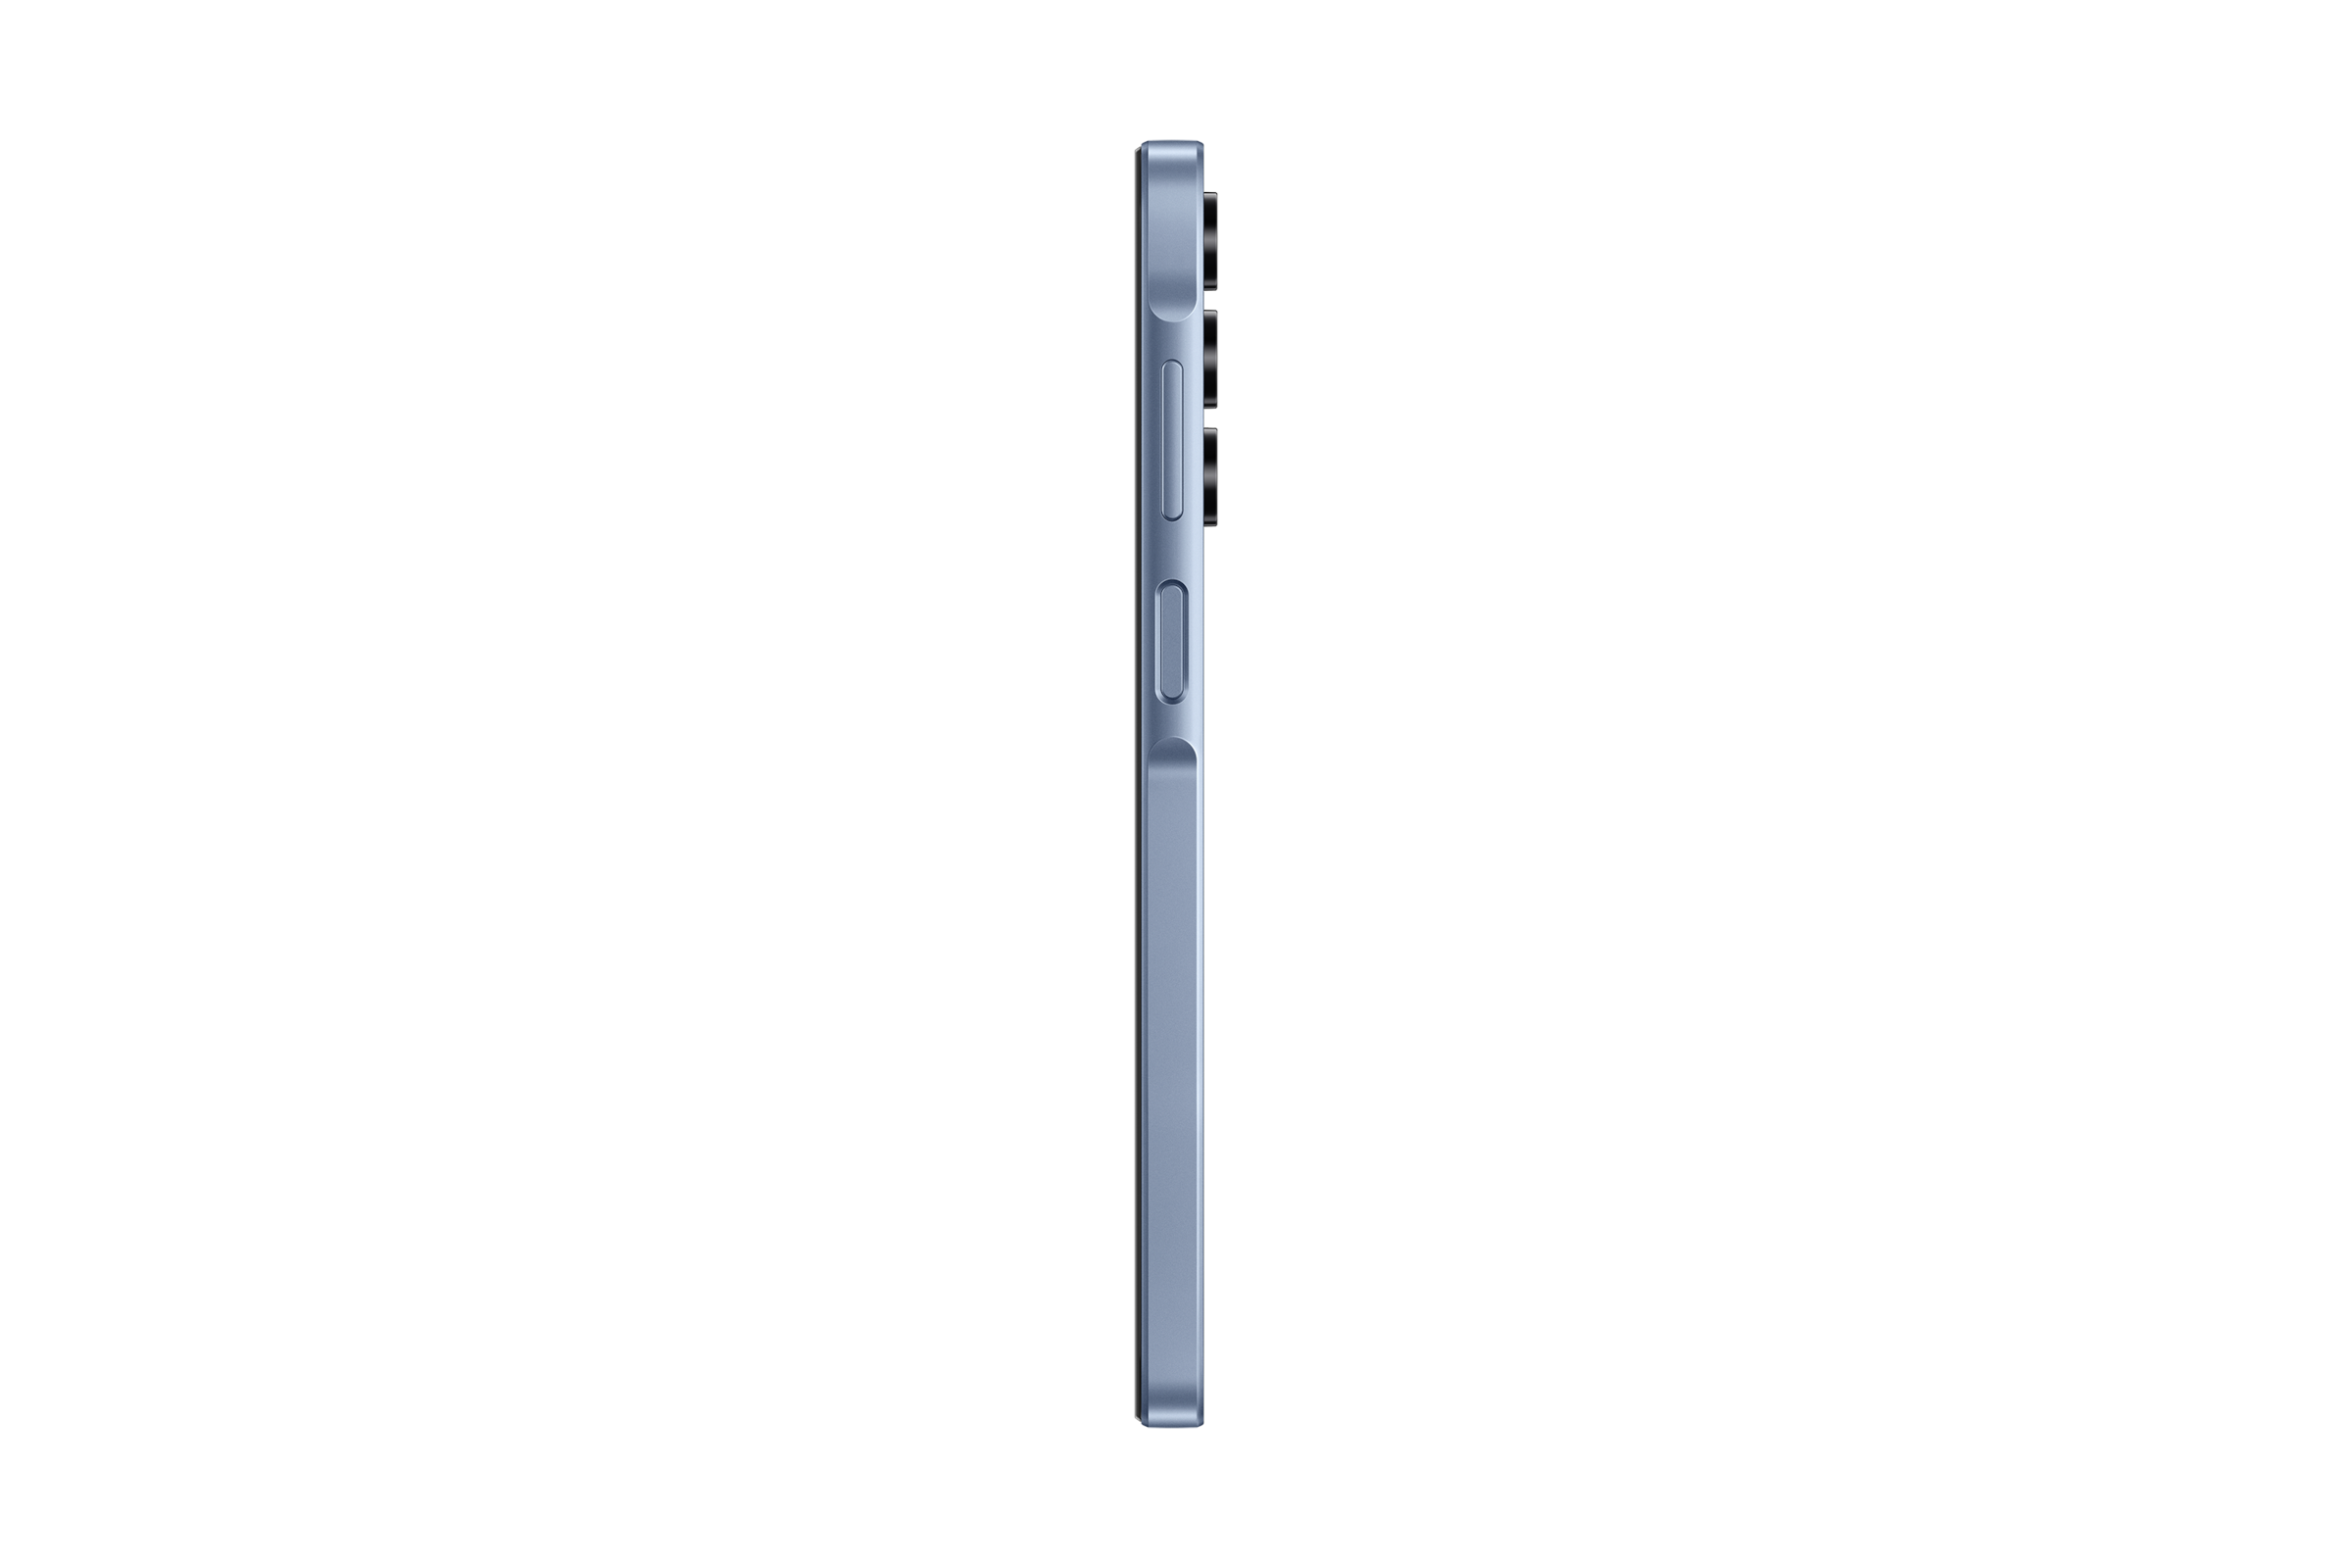 SAMSUNG Galaxy A15, 128 GB, Blue 